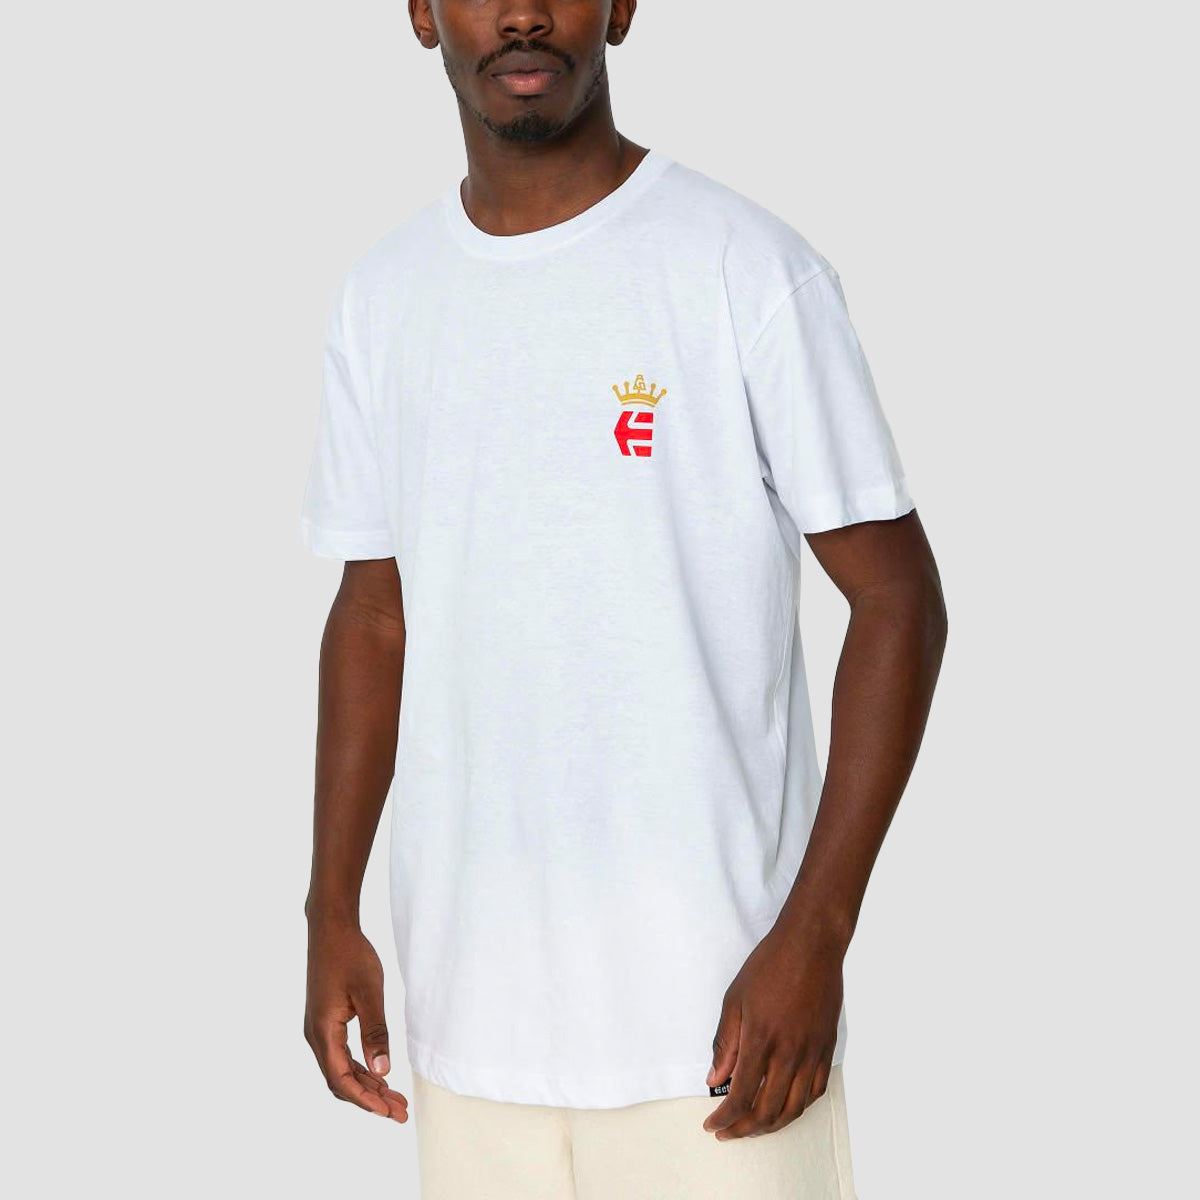 Etnies AG T-Shirt White